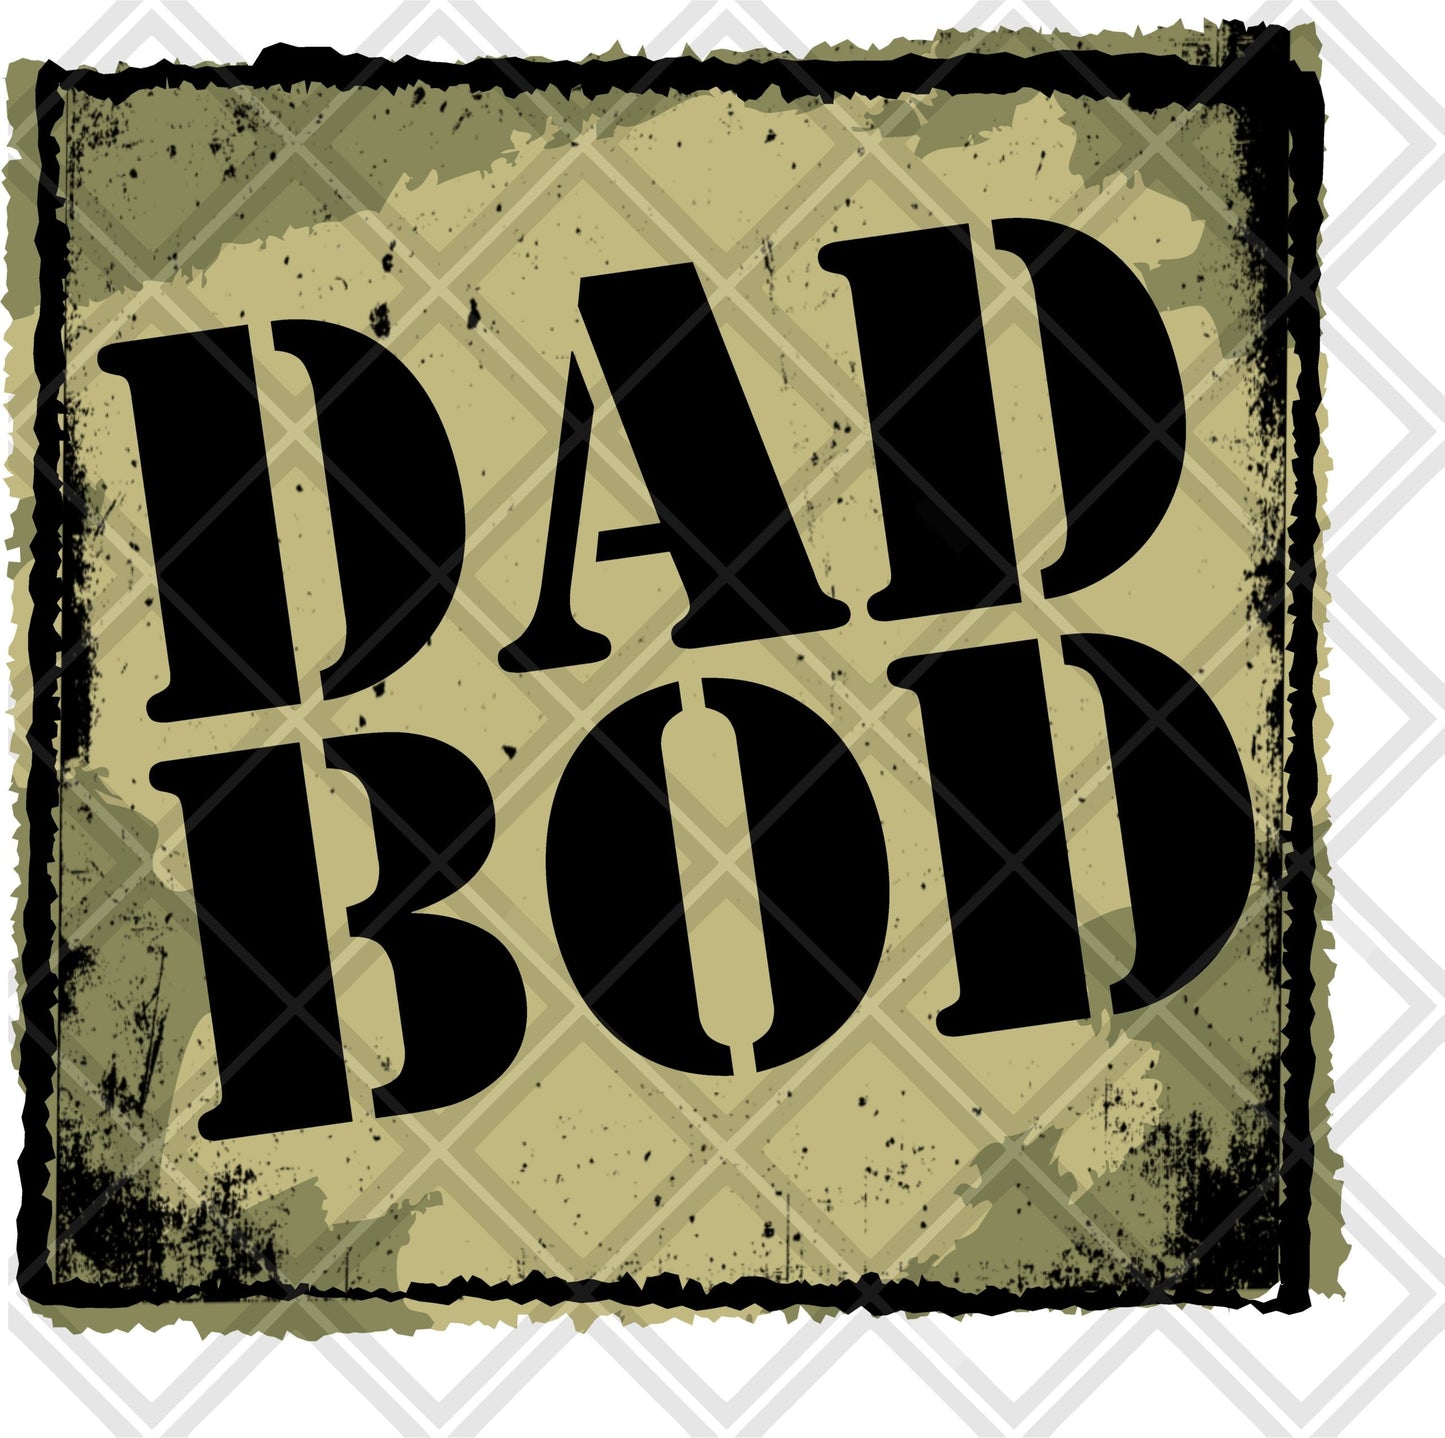 DAD BOD FRAME Digital Download Instand Download